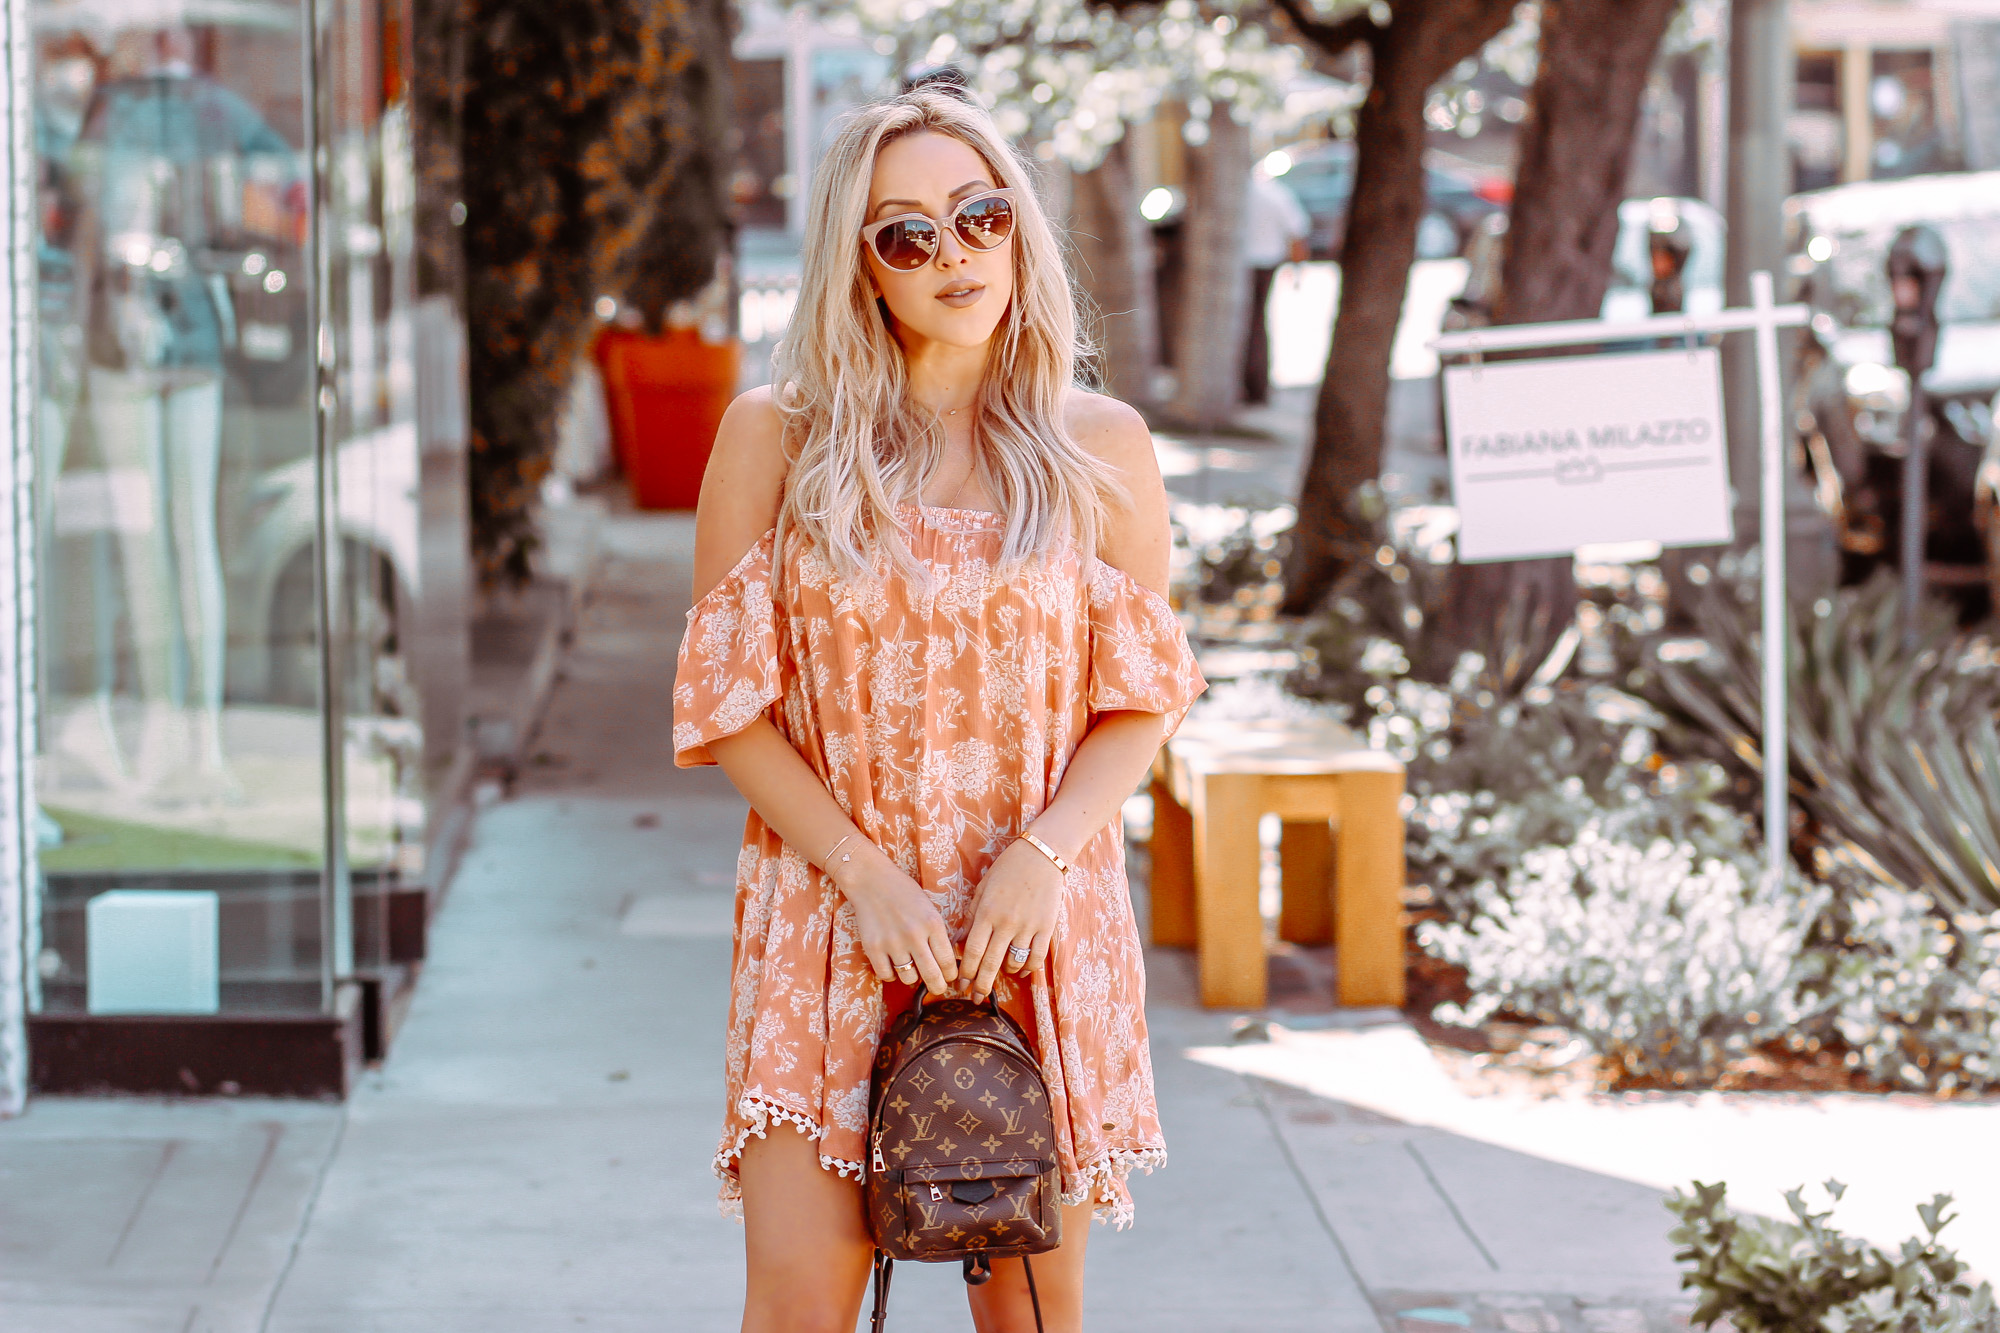 Orange Summer Dress | Louis Vuitton Backpack | Summer Fashion | Blondie in the City by Hayley Larue